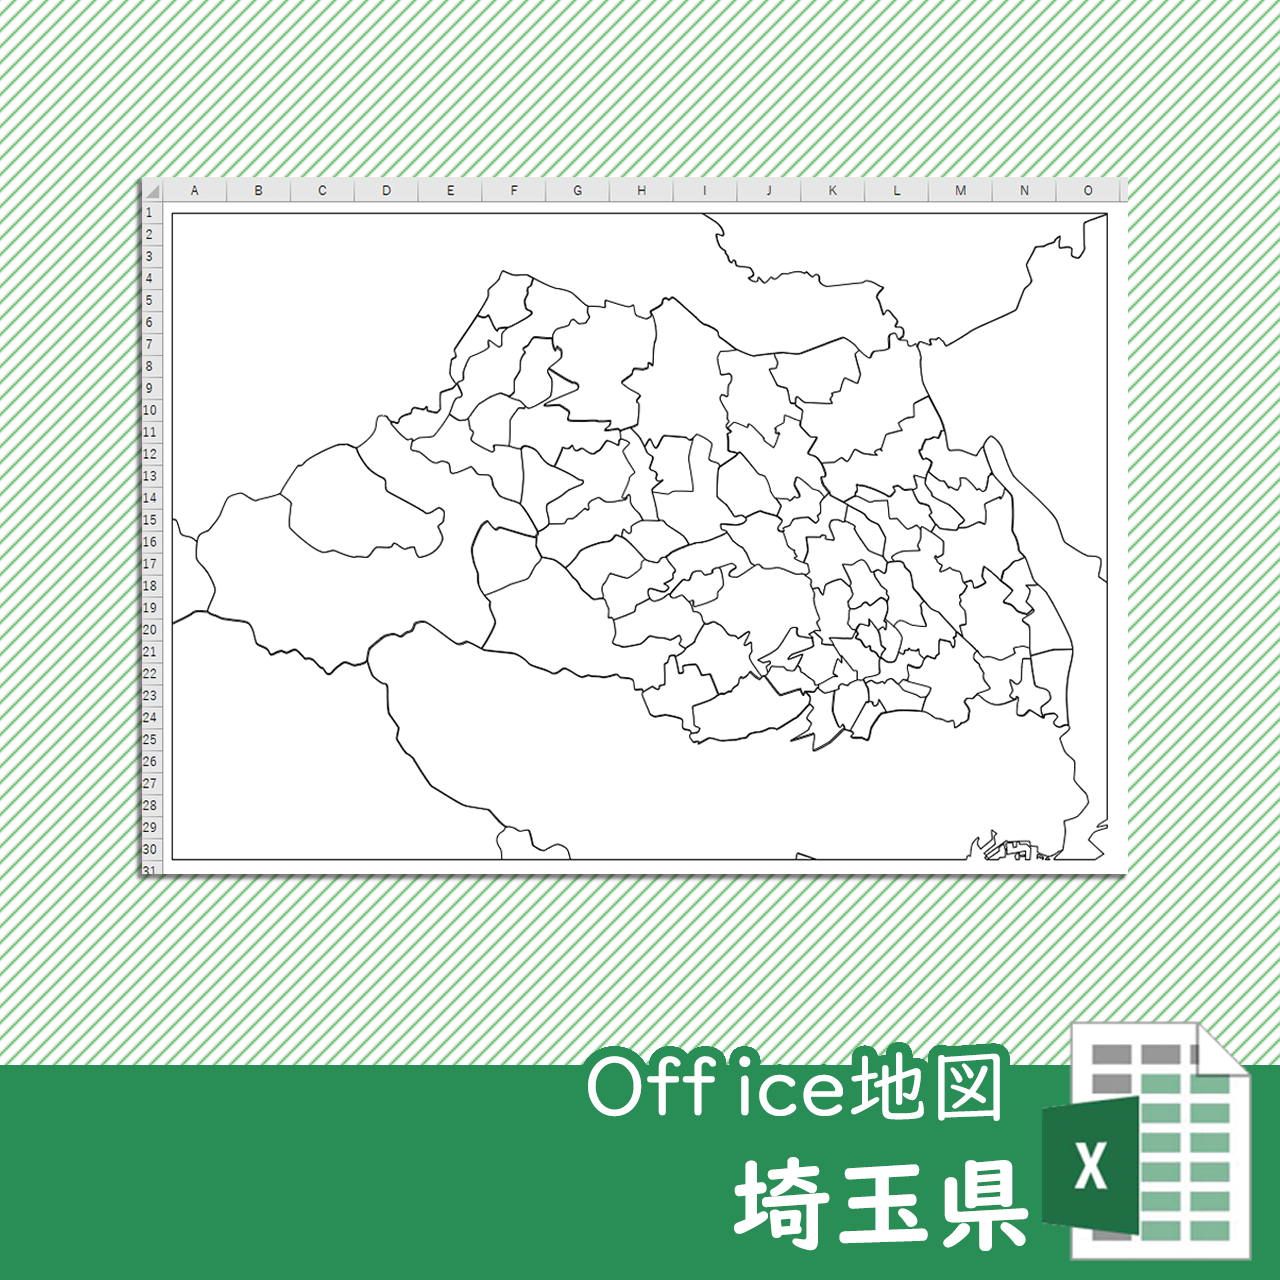 埼玉県のOffice地図のサムネイル